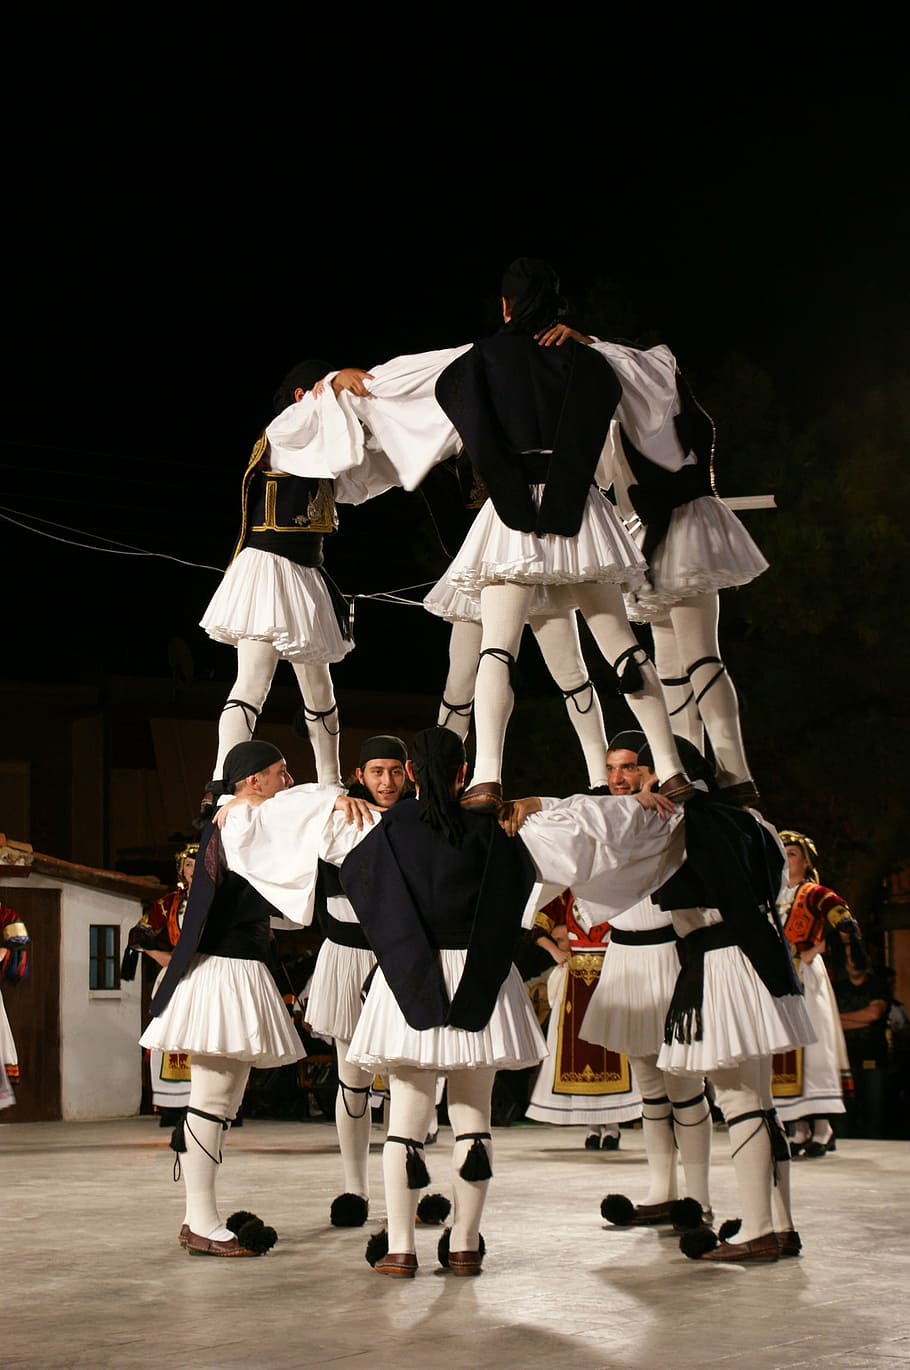 Grecia, folk, danza, griego, tradición, tradicional, baile, actuación, bailarín, traje